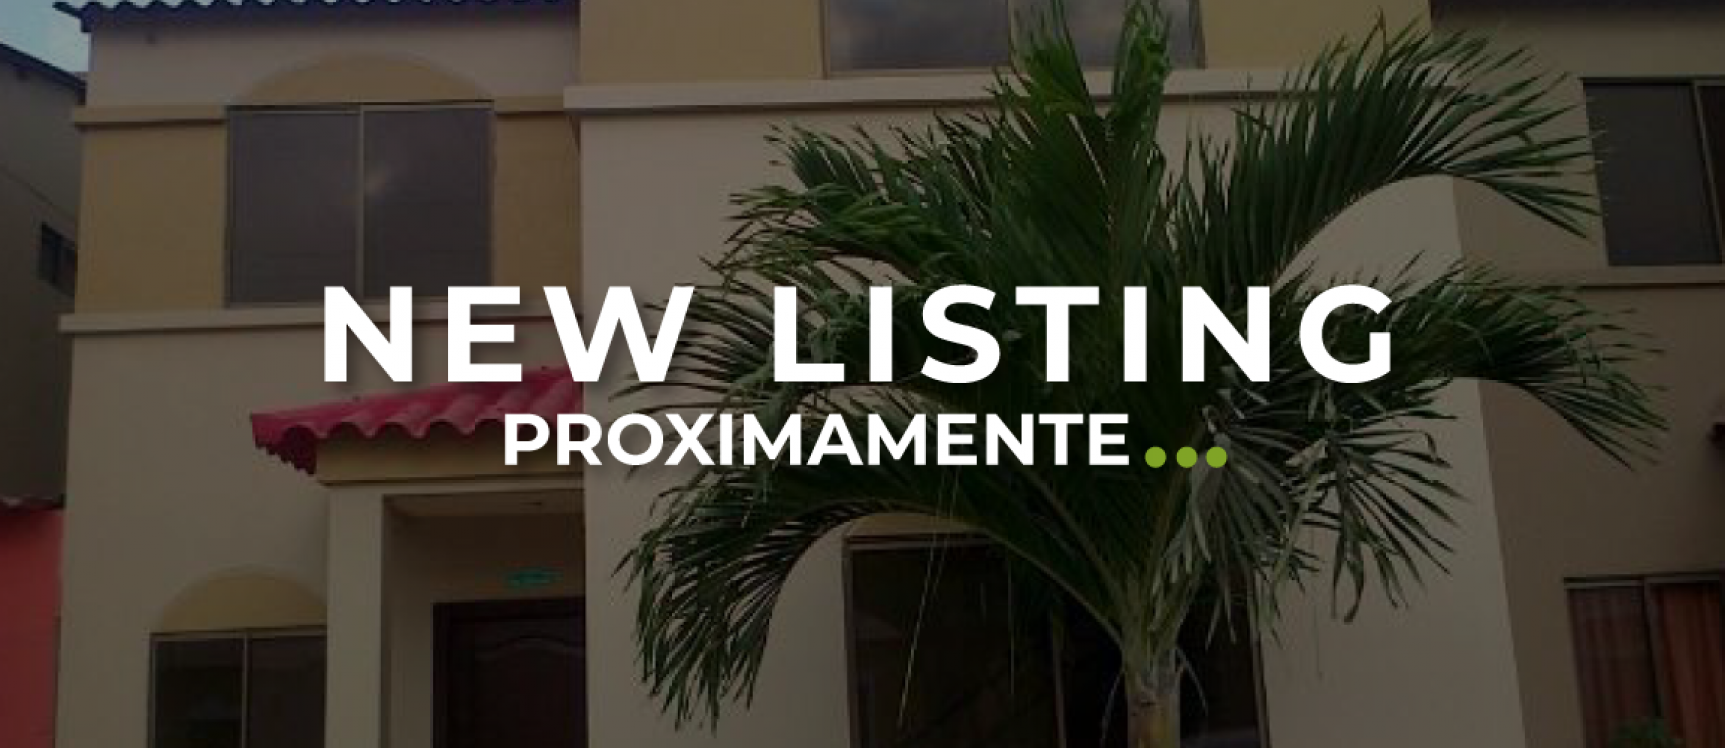 GeoBienes - Casa de 2 pisos en alquiler ubicada en la Urbanización La Joya - Plusvalia Guayaquil Casas de venta y alquiler Inmobiliaria Ecuador